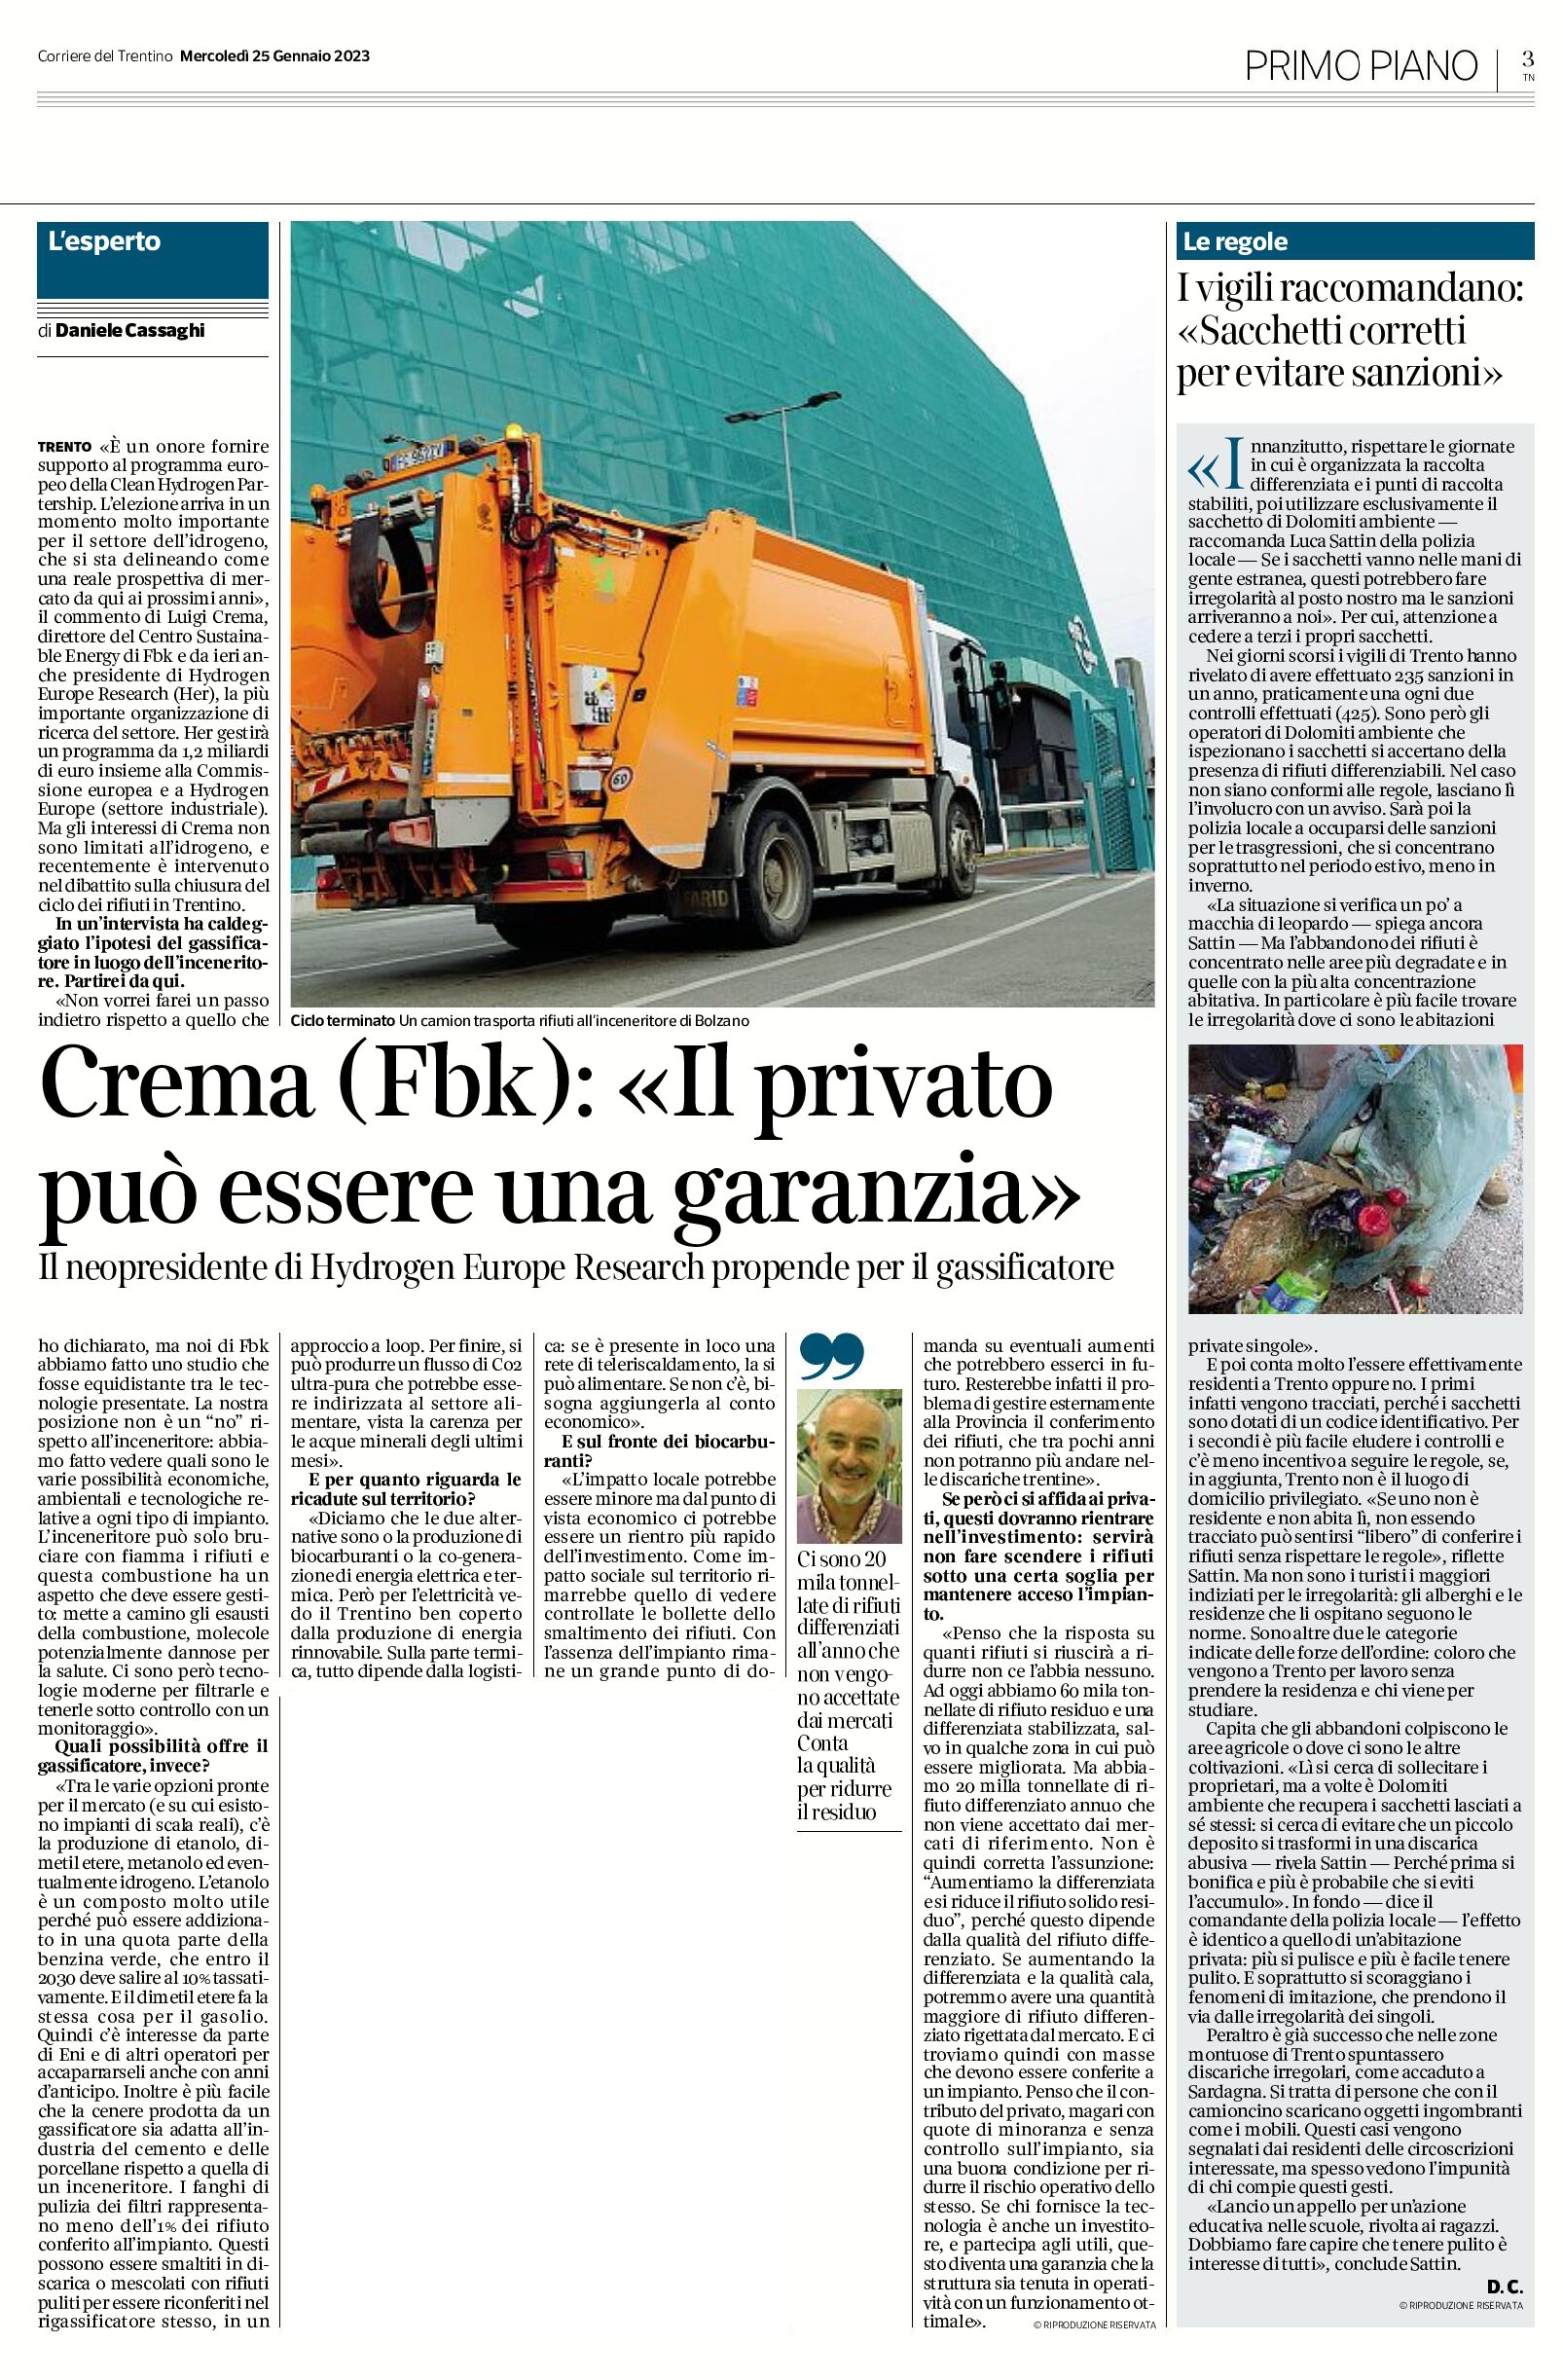 Trentino: intervista a Crema (Fbk). Privato e gassificatore